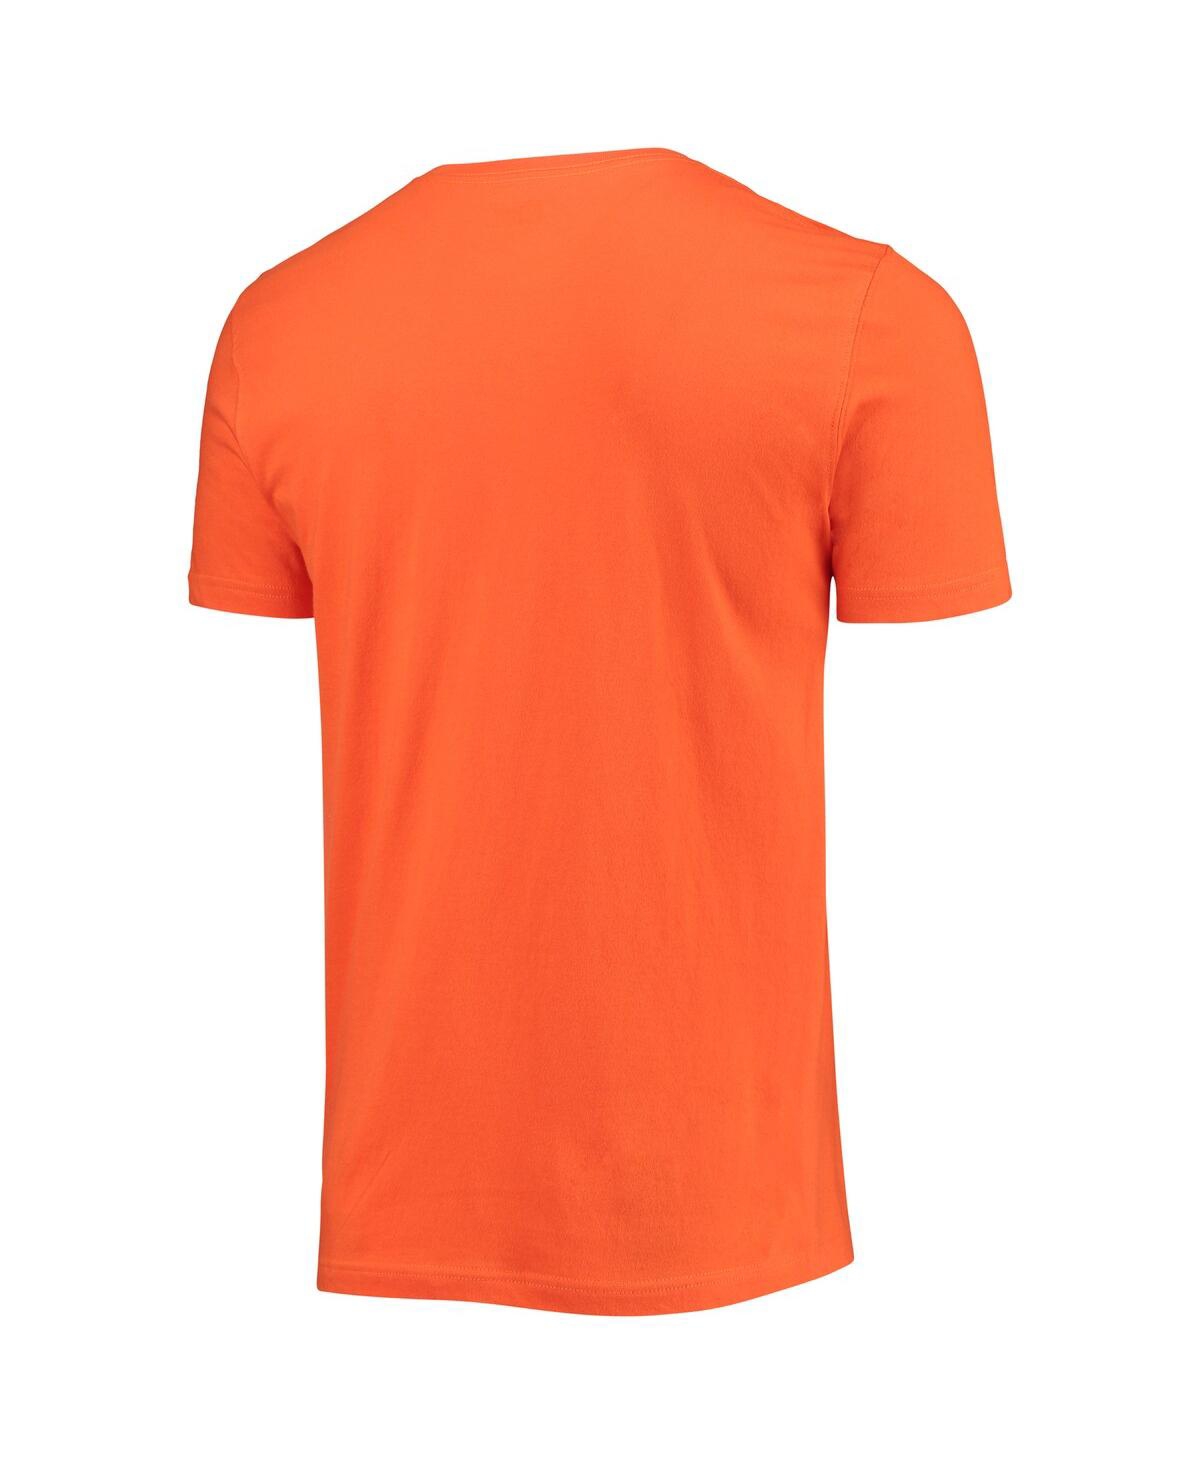 Shop New Era Men's  Orange Cleveland Browns Stadium T-shirt